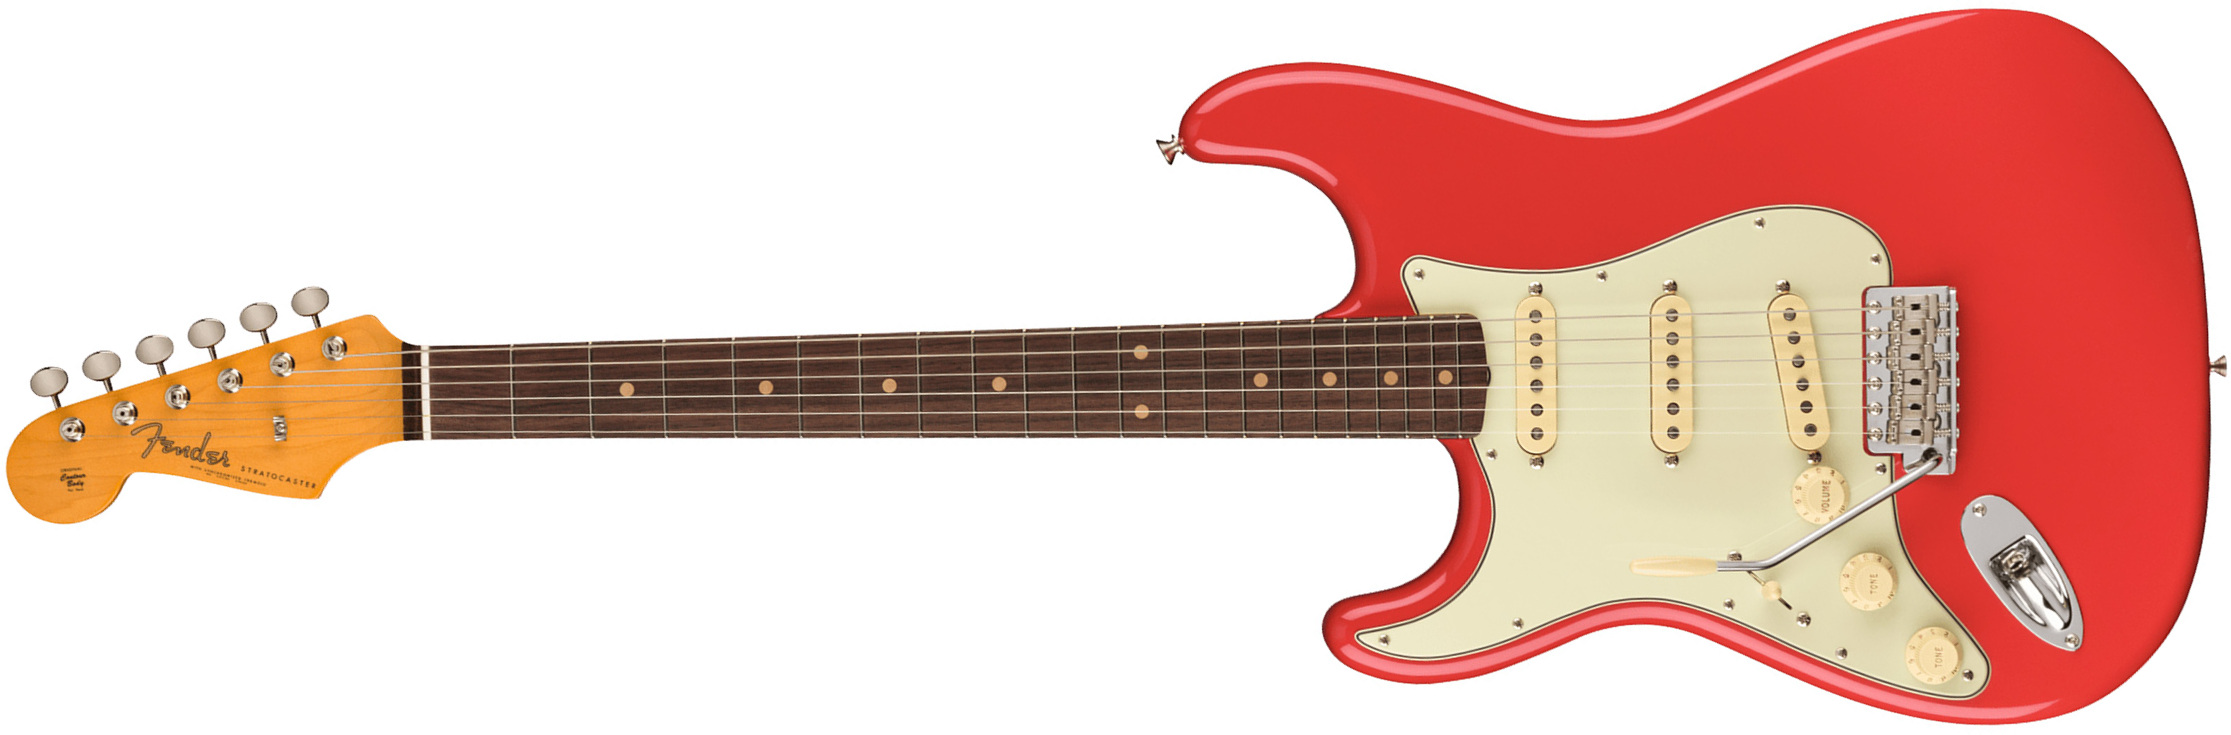 Fender Strat 1961 American Vintage Ii Lh Gaucher Usa 3s Trem Rw - Fiesta Red - Linkshandige elektrische gitaar - Main picture